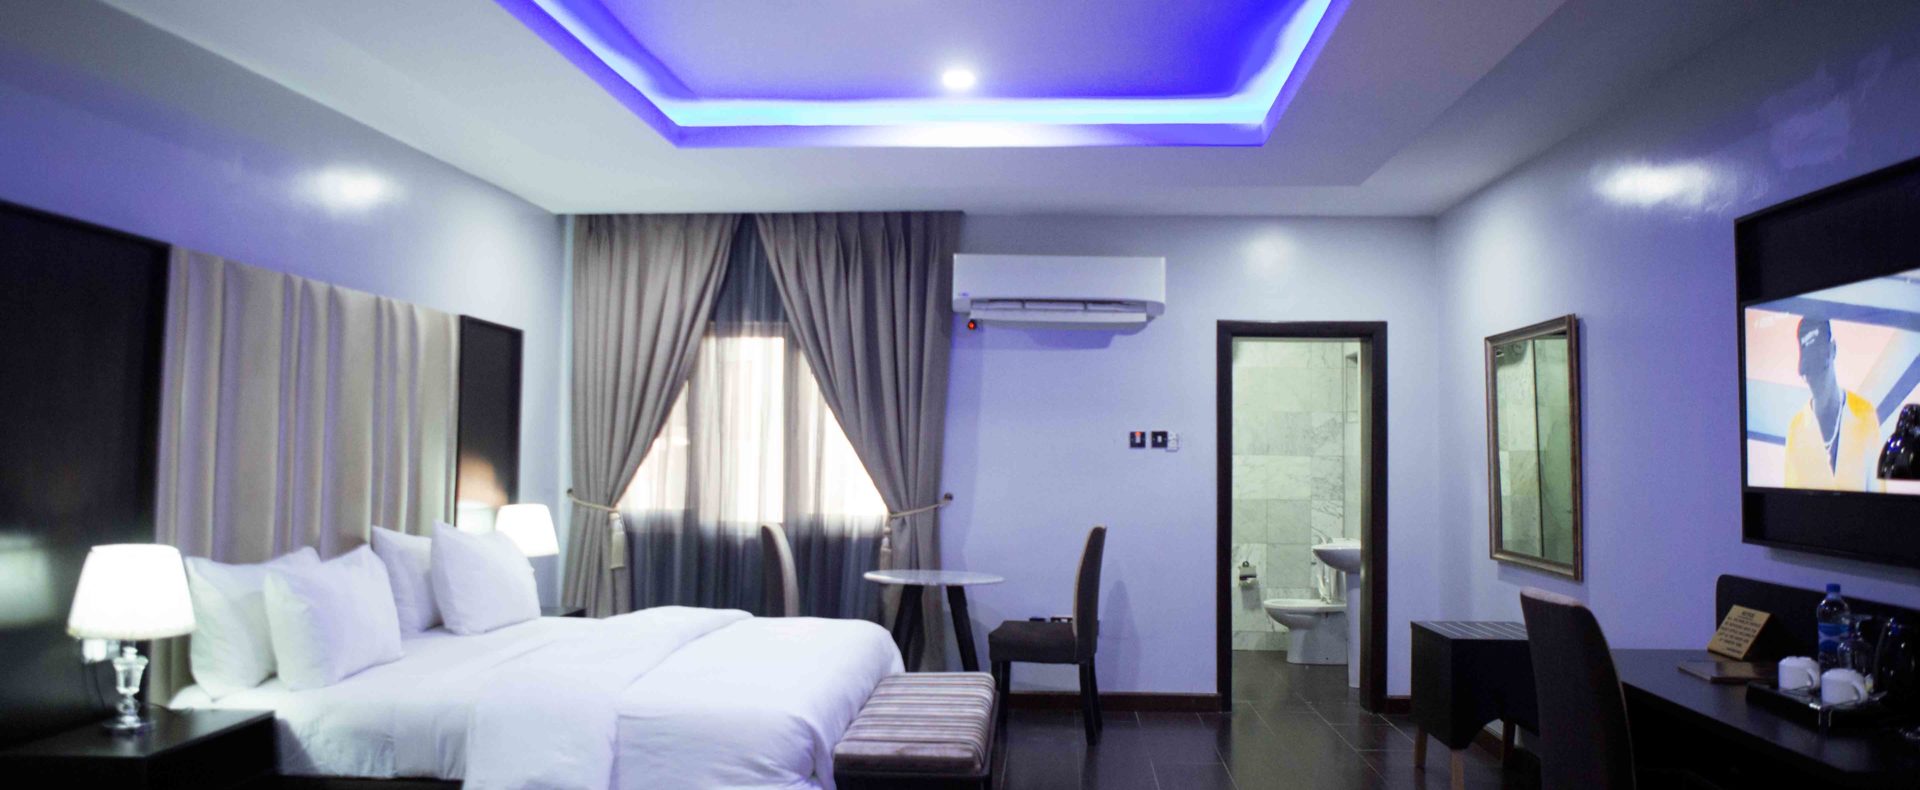 Hotel Studio Suite Room In Lekki Phase 1 Lagos Nigeria